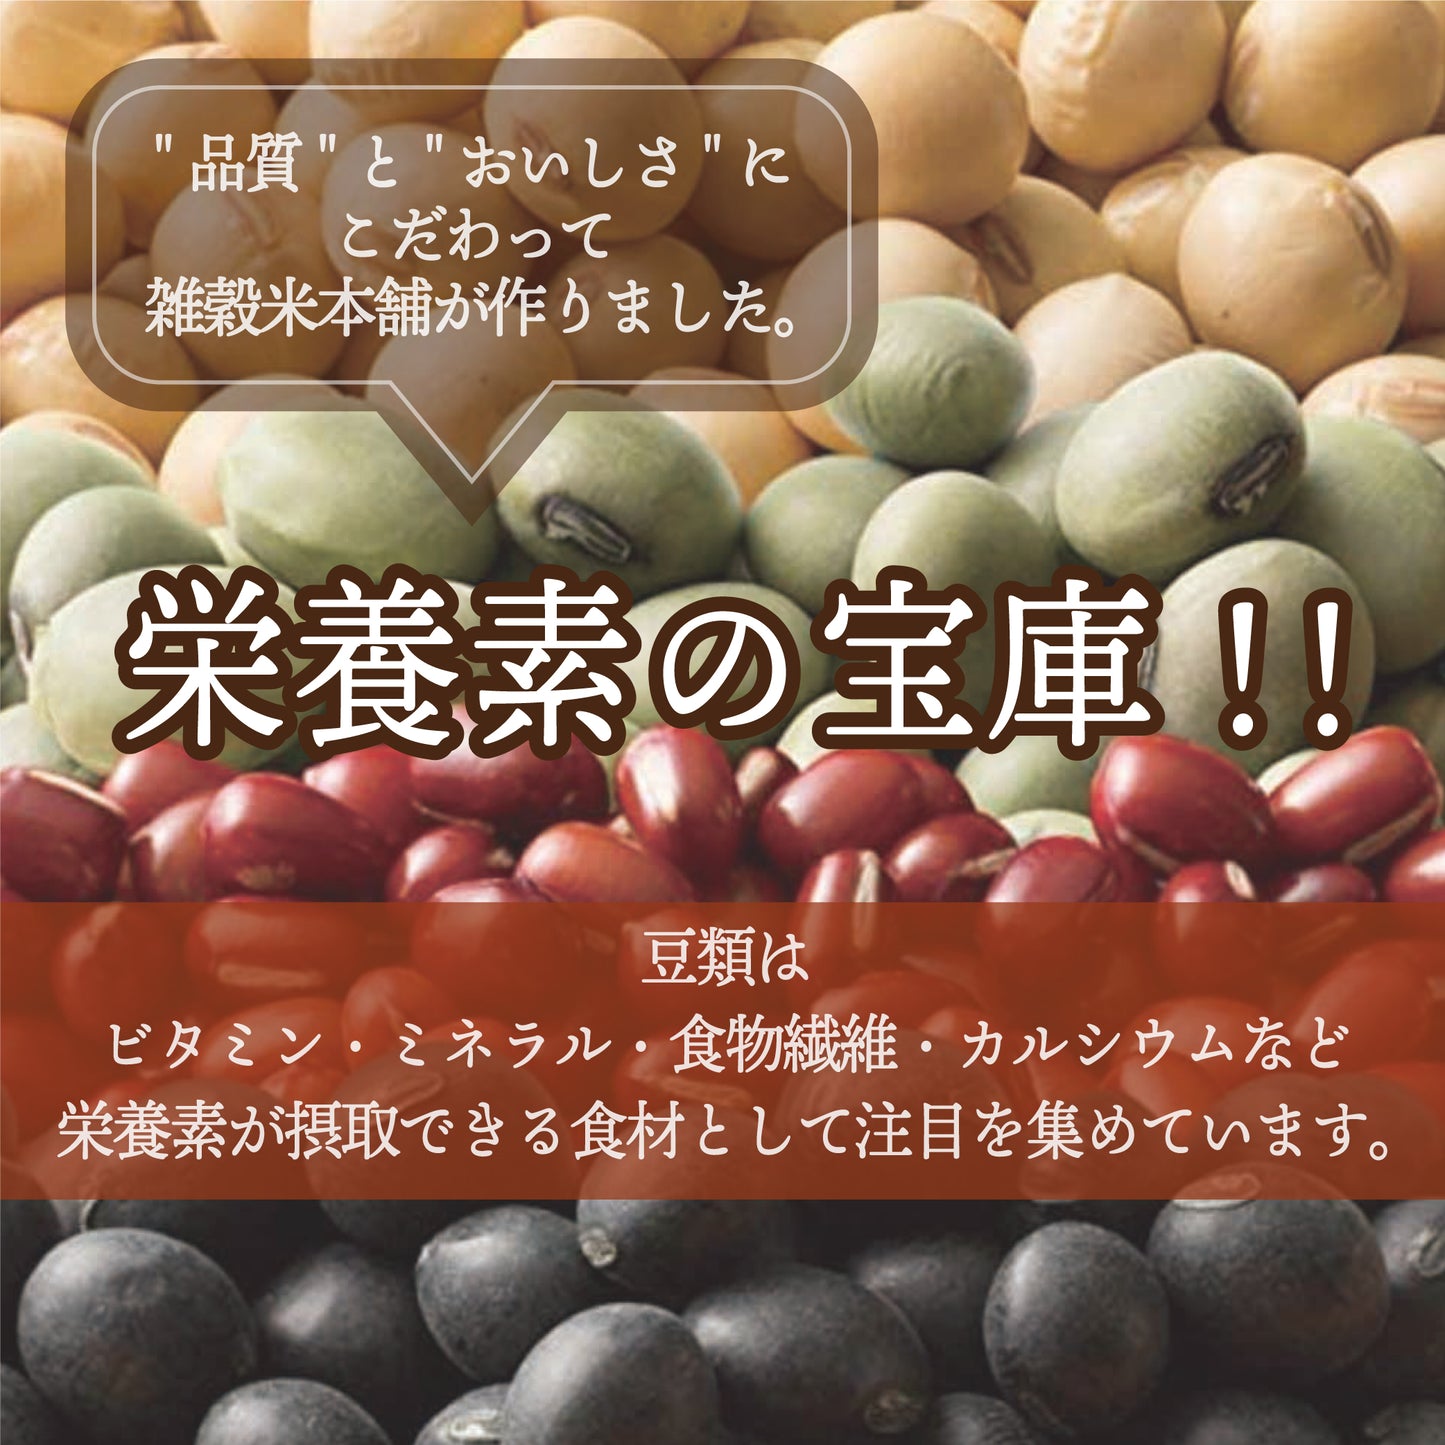 雑穀 雑穀米 国産 ホール豆４種ブレンド (大豆/黒大豆/青大豆/小豆) 9kg(450g×20袋)